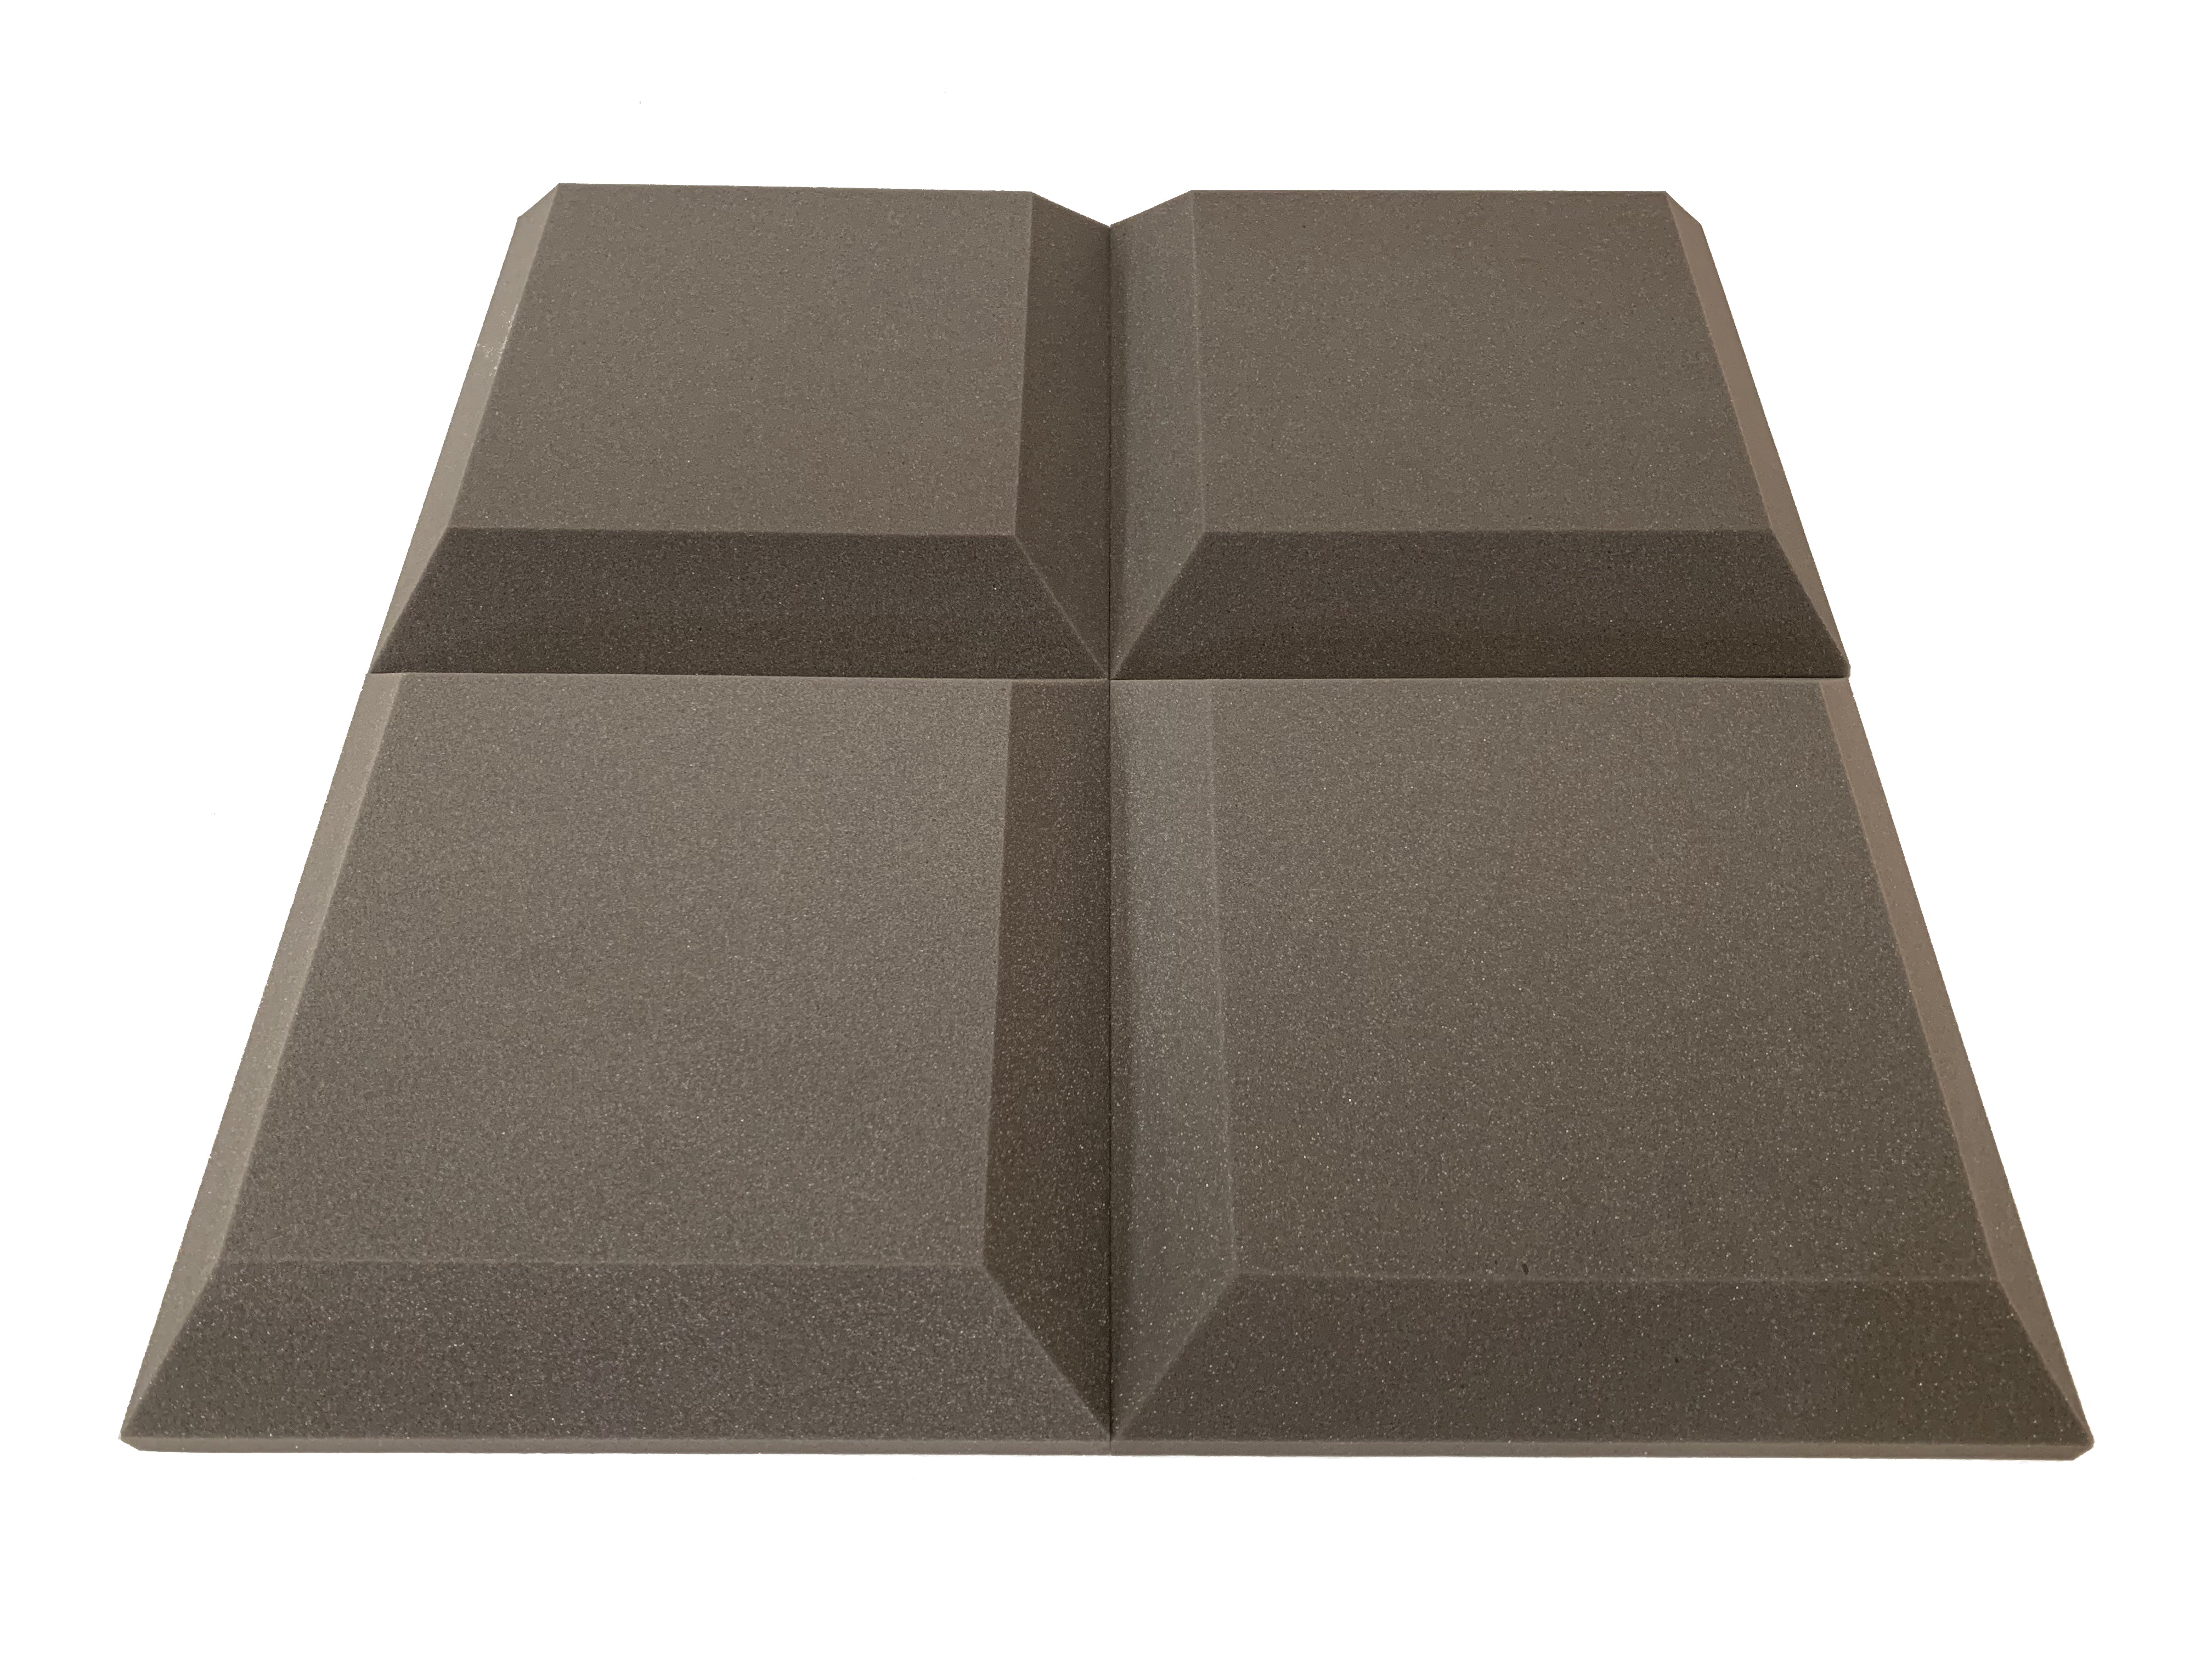 Tegular 2" Acoustic Studio Foam Tile Pack - 24 dalles, couverture de 3,48 m²-14